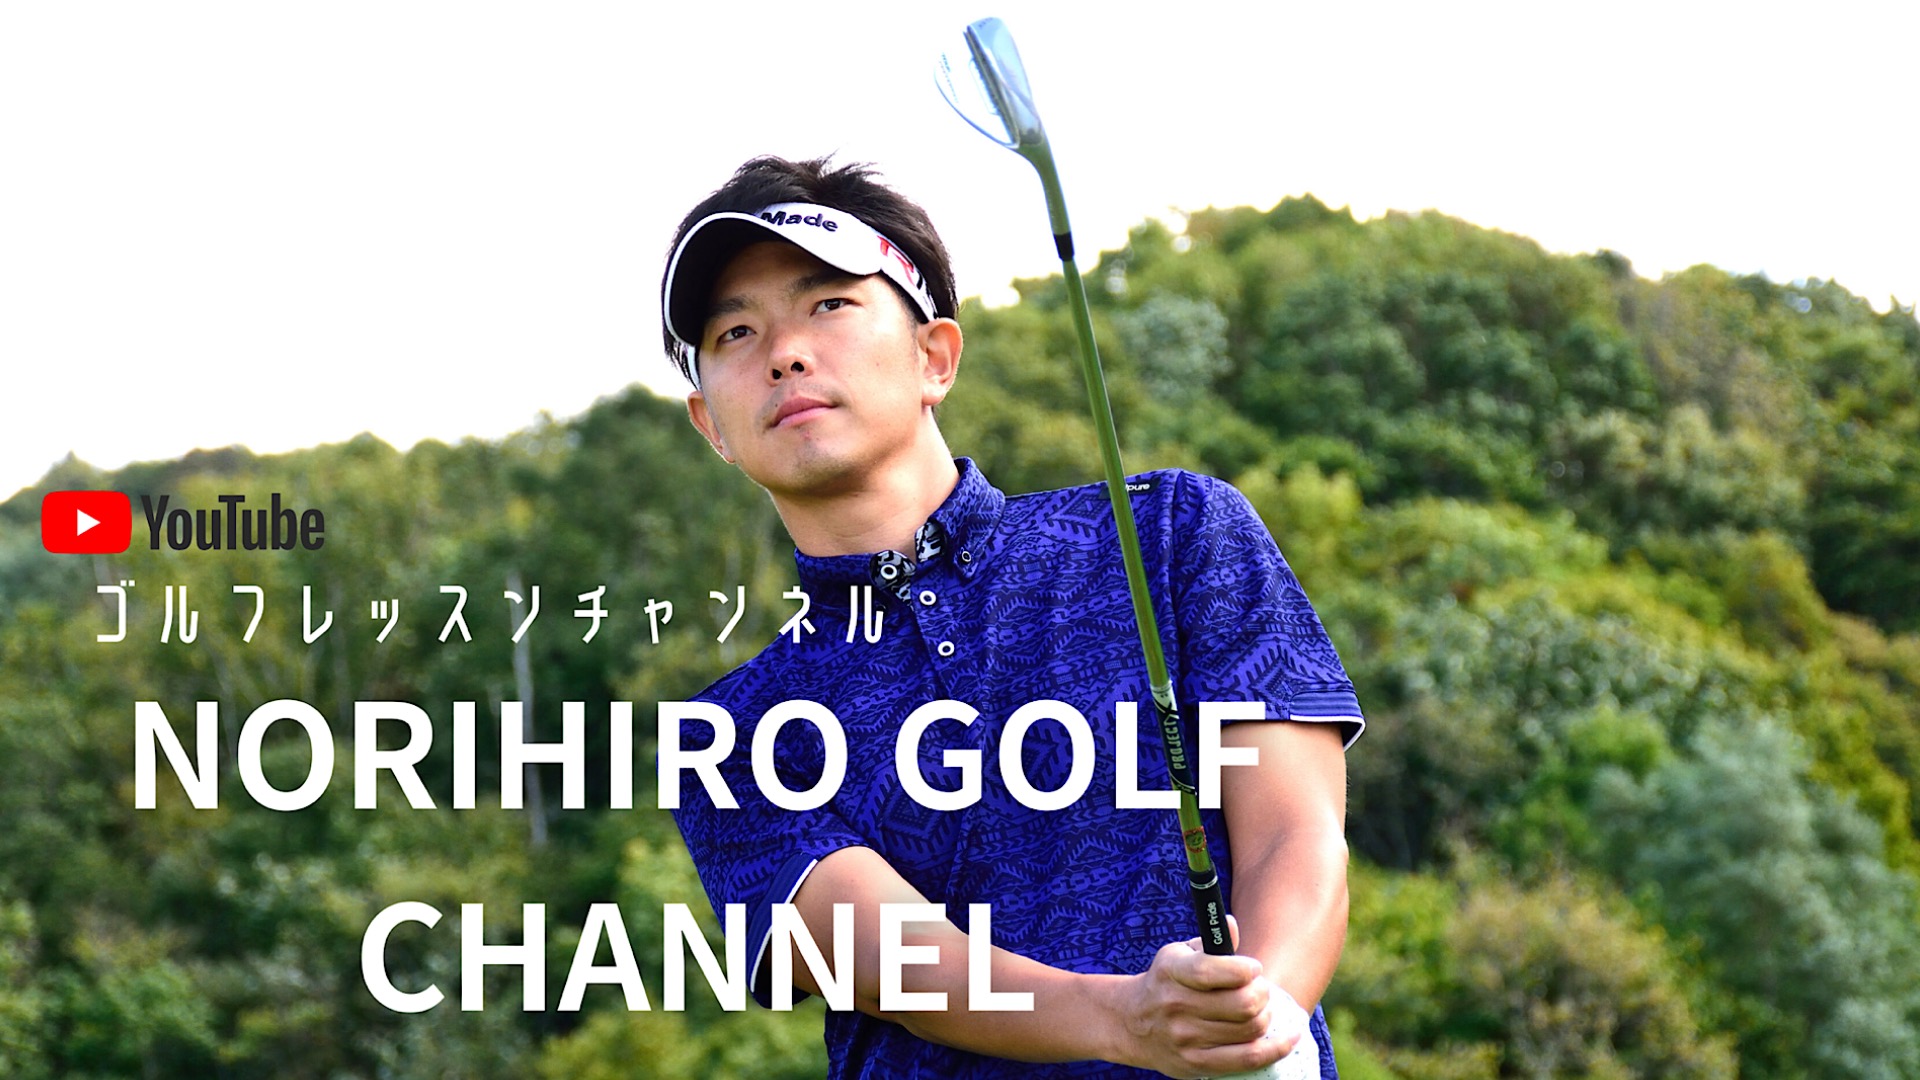 生涯スポーツ「ゴルフ」（Norihiro Golf チャンネル） - エキスパート